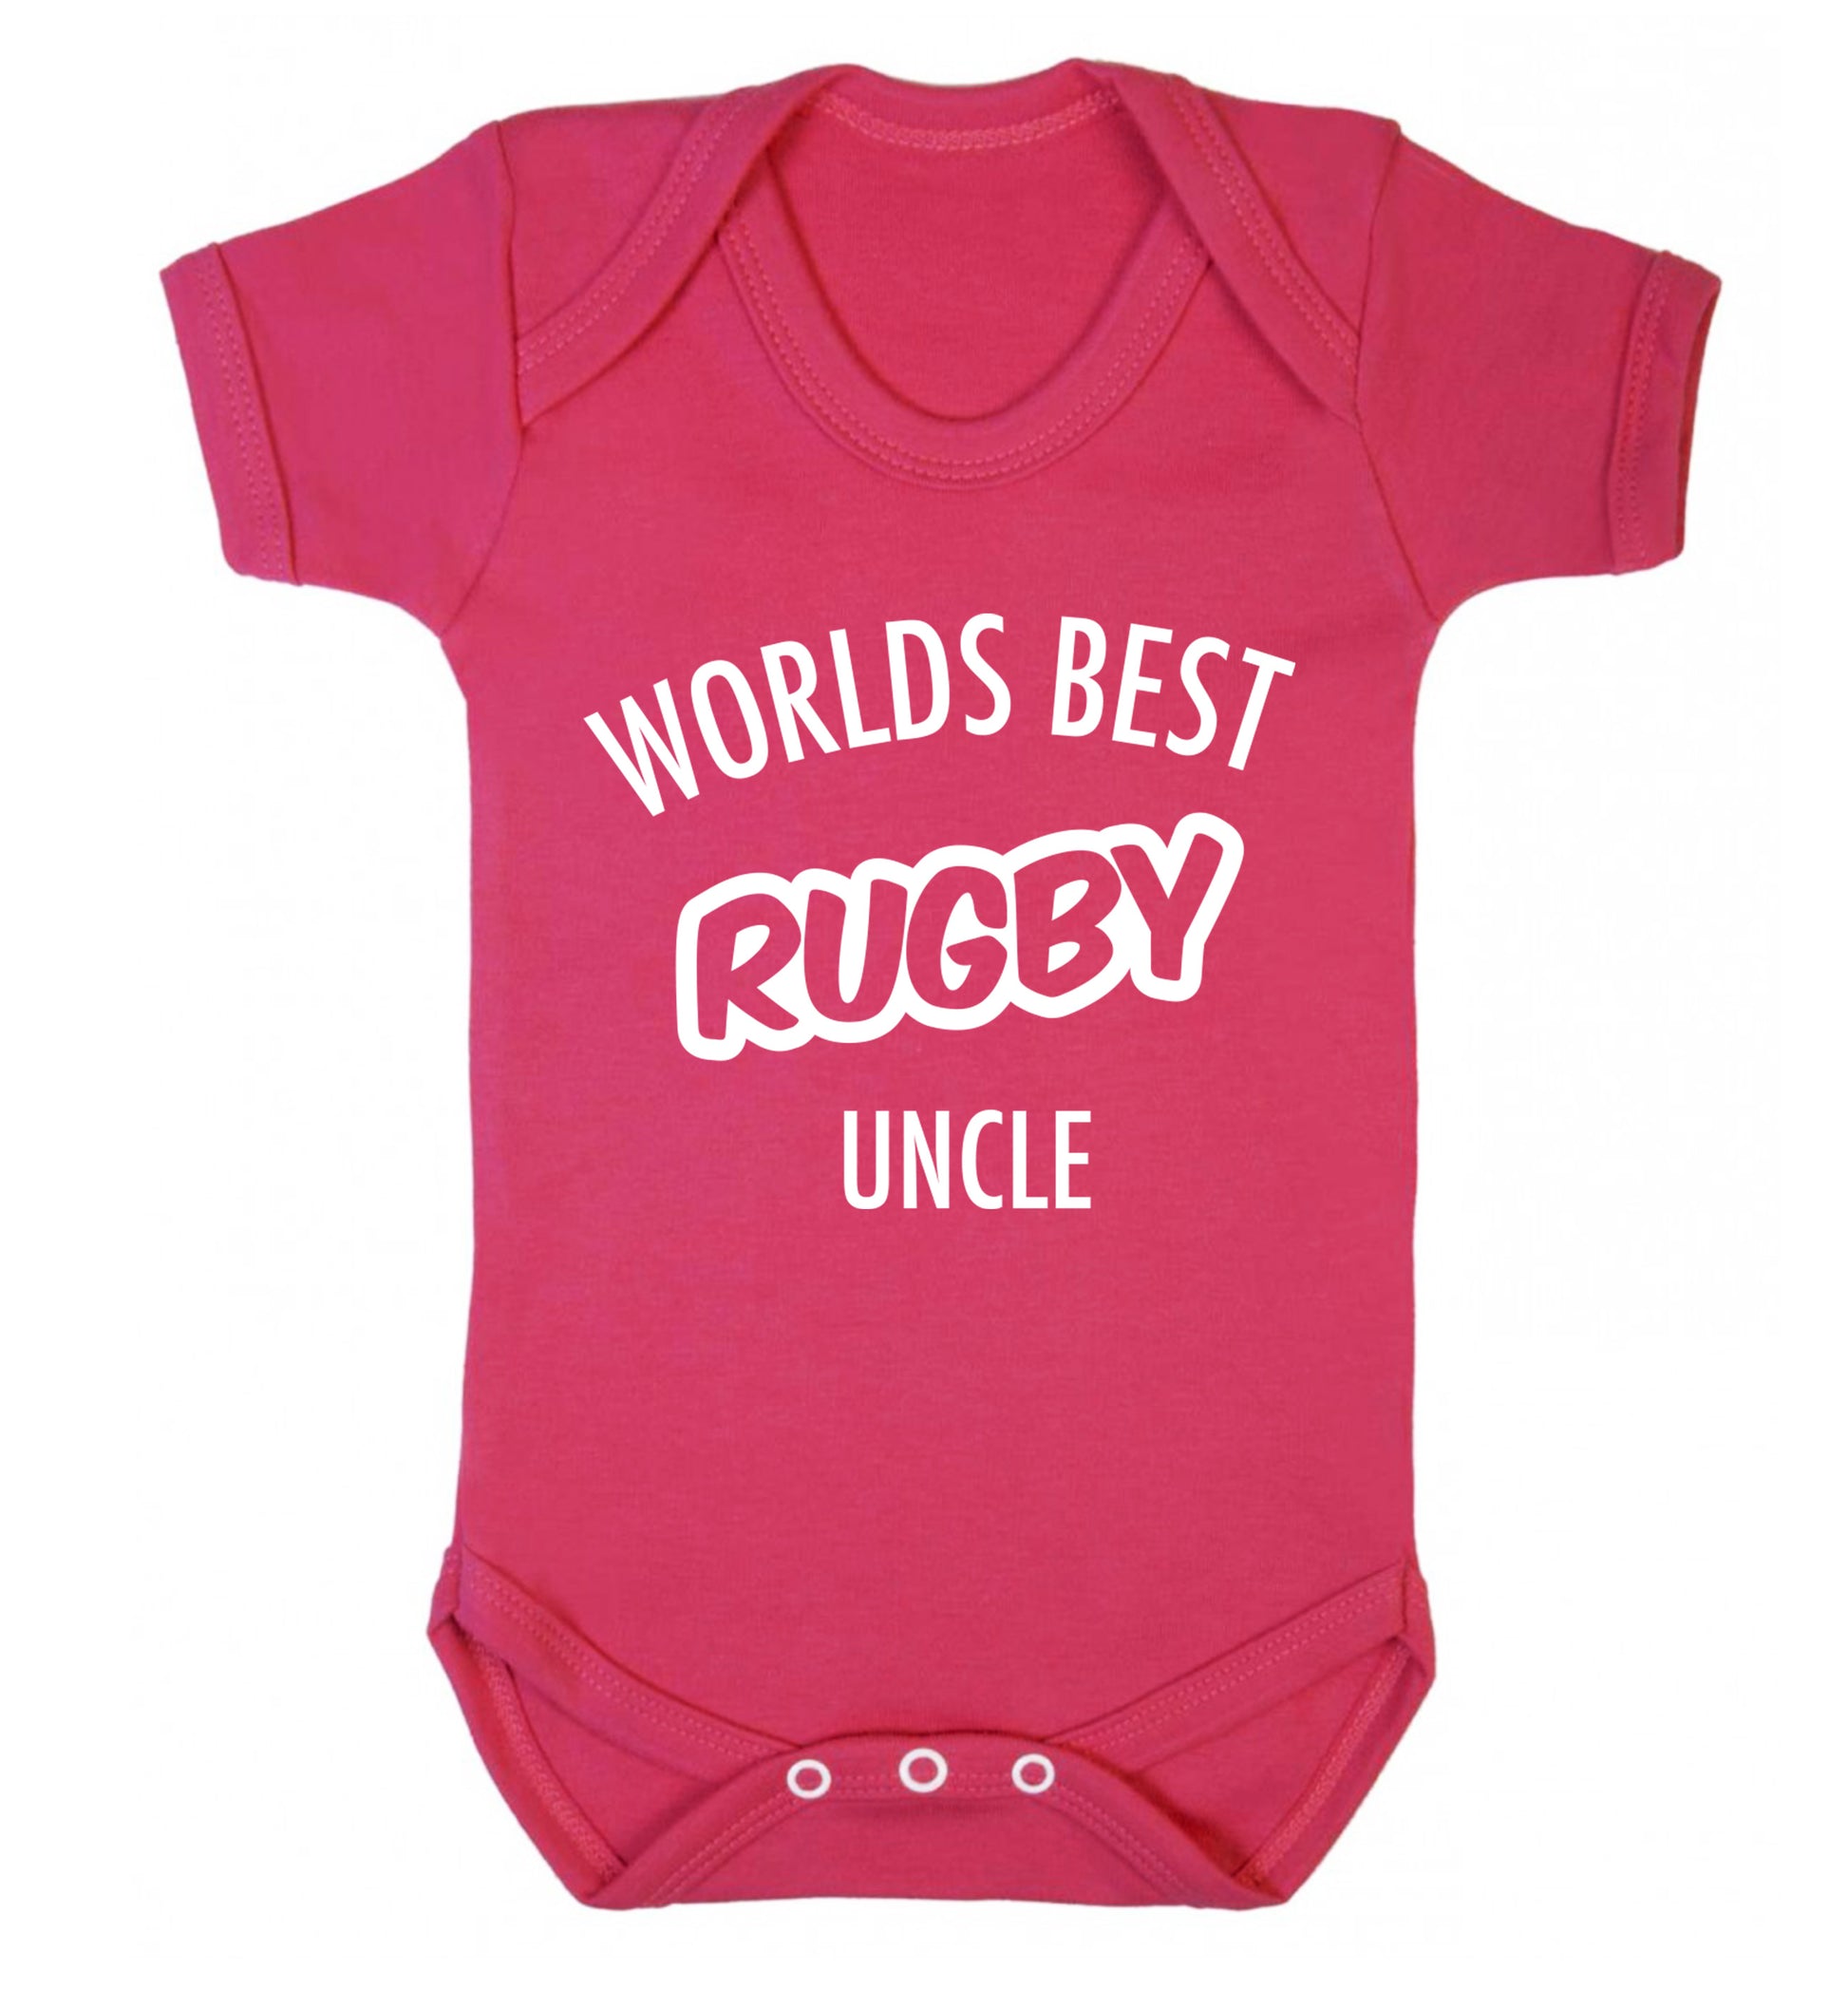 Worlds best rugby uncle Baby Vest dark pink 18-24 months